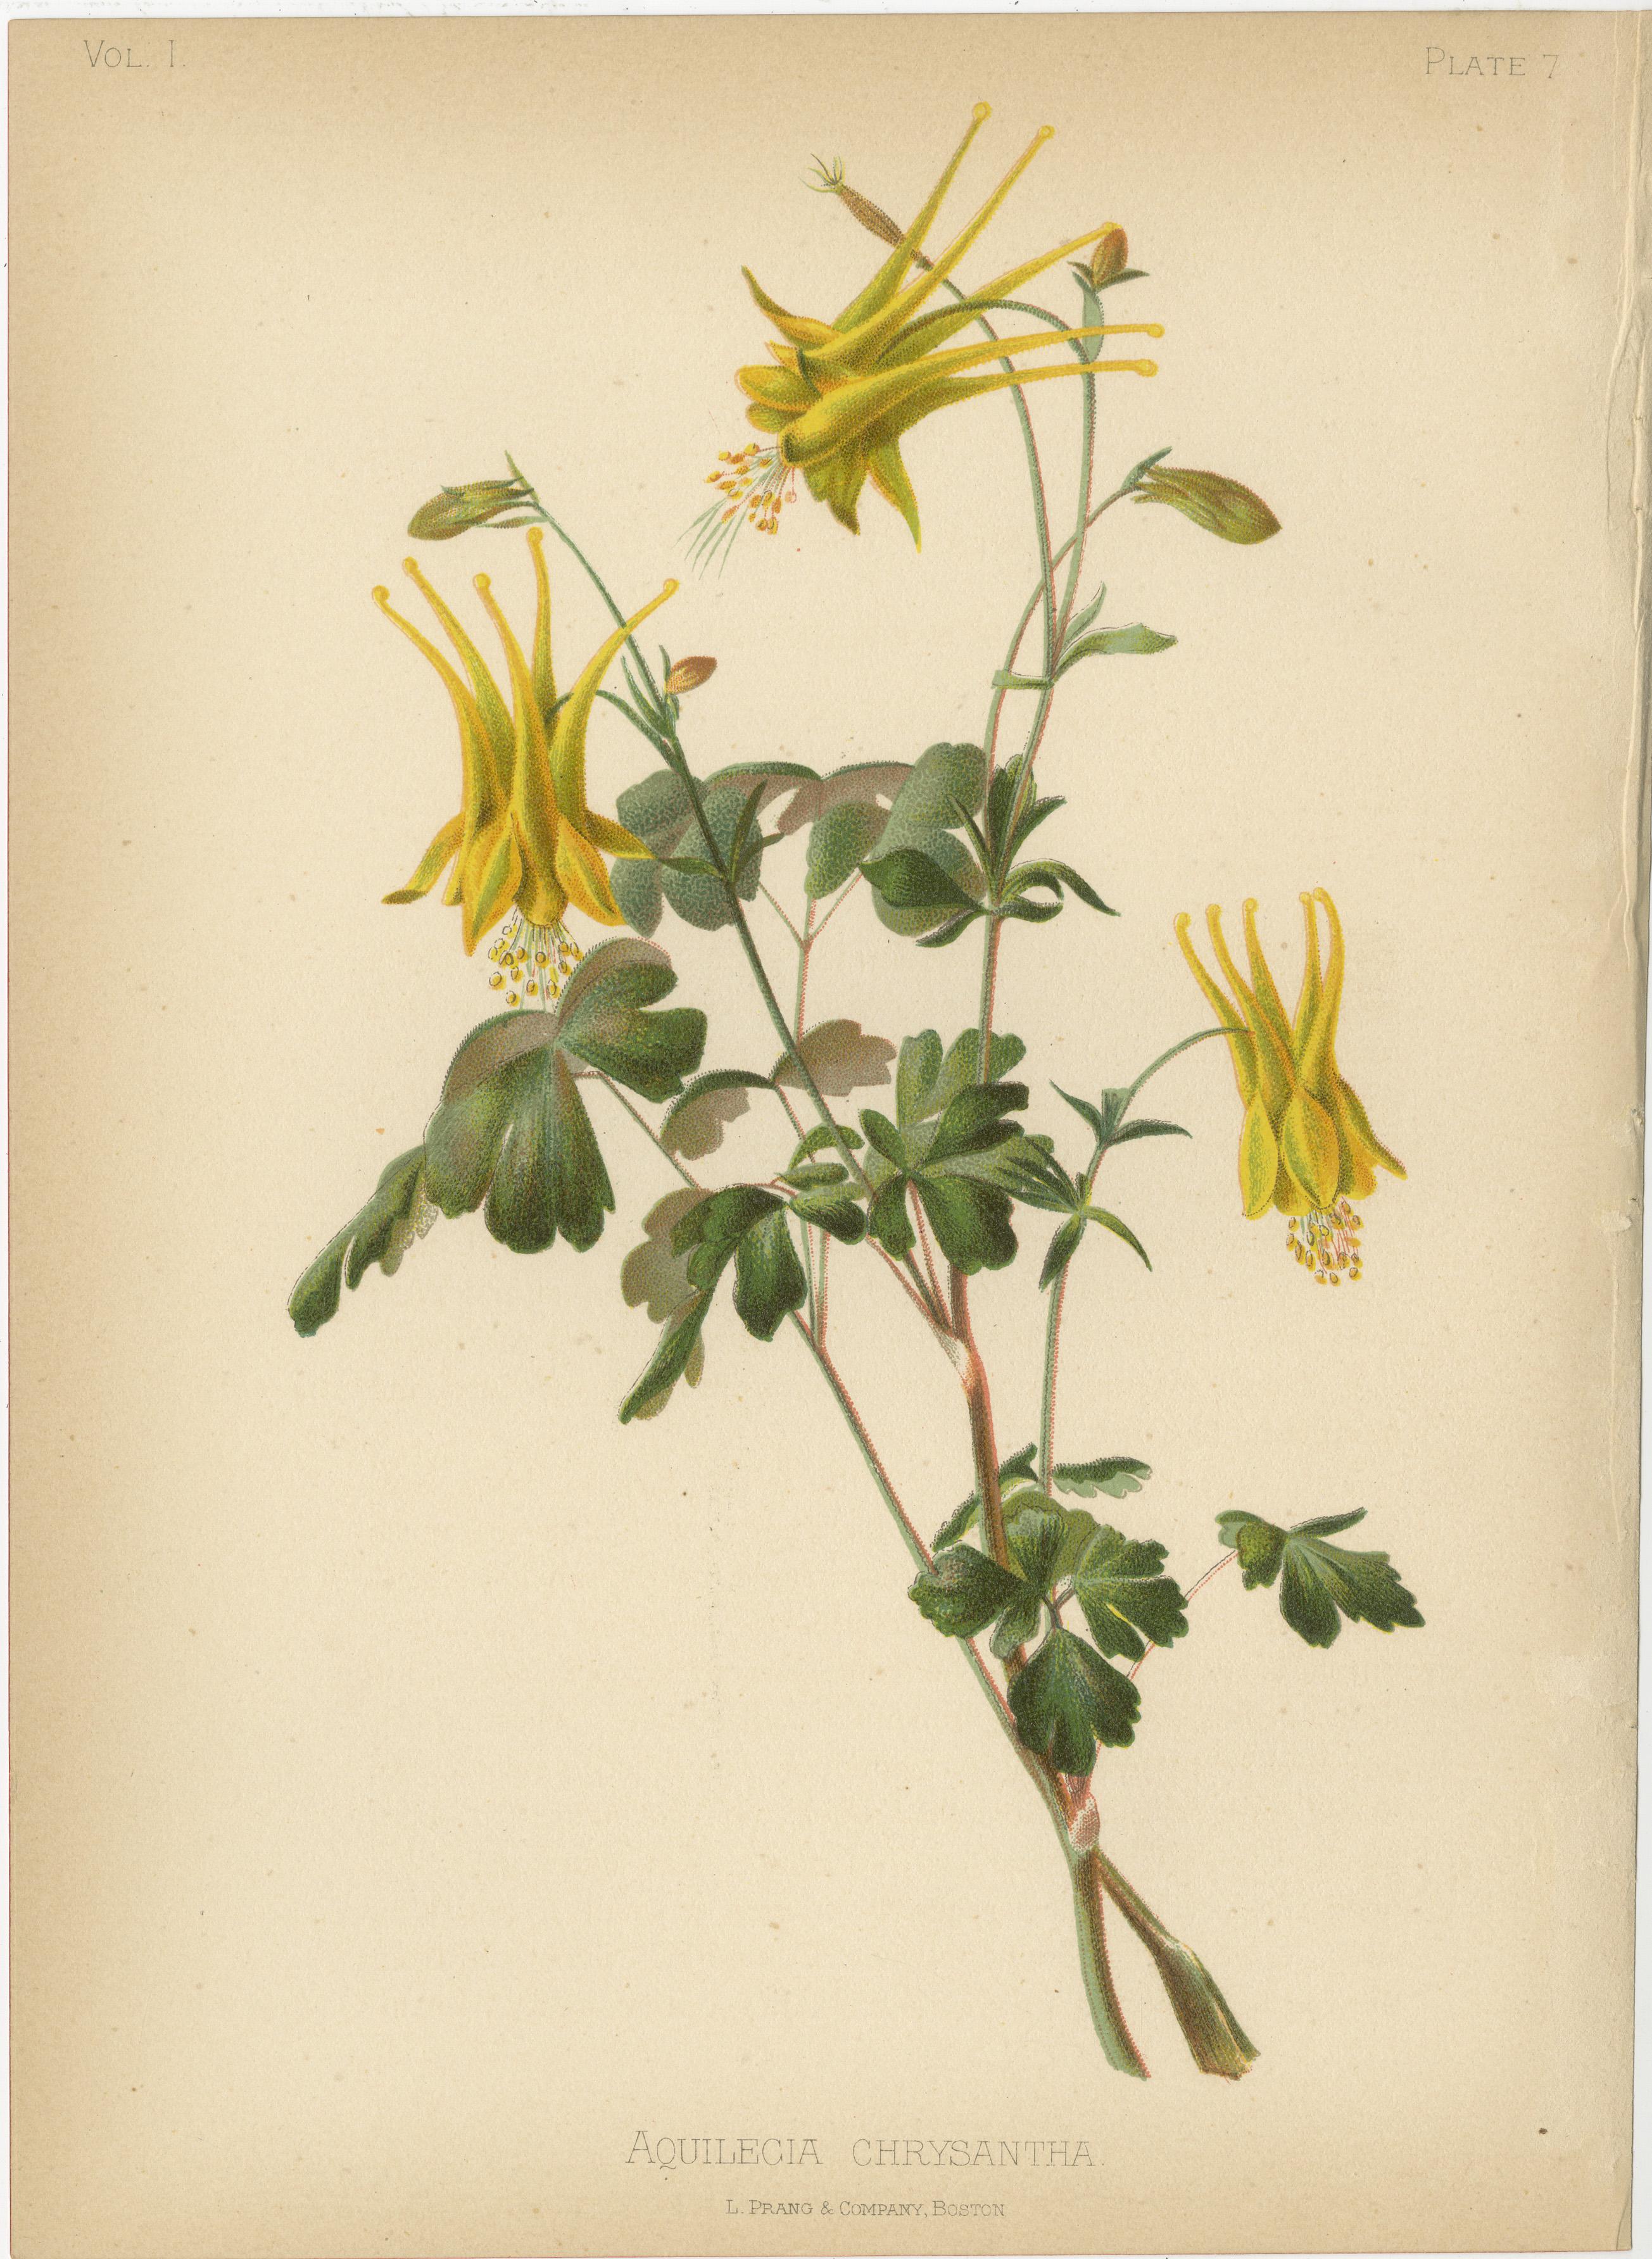 Das Bild zeigt eine Sammlung von vier Chromolithographien, die verschiedene Pflanzenarten darstellen. Diese Illustrationen zeichnen sich durch ihre botanische Genauigkeit und Ästhetik aus, die typisch für naturkundliche Publikationen des späten 19.